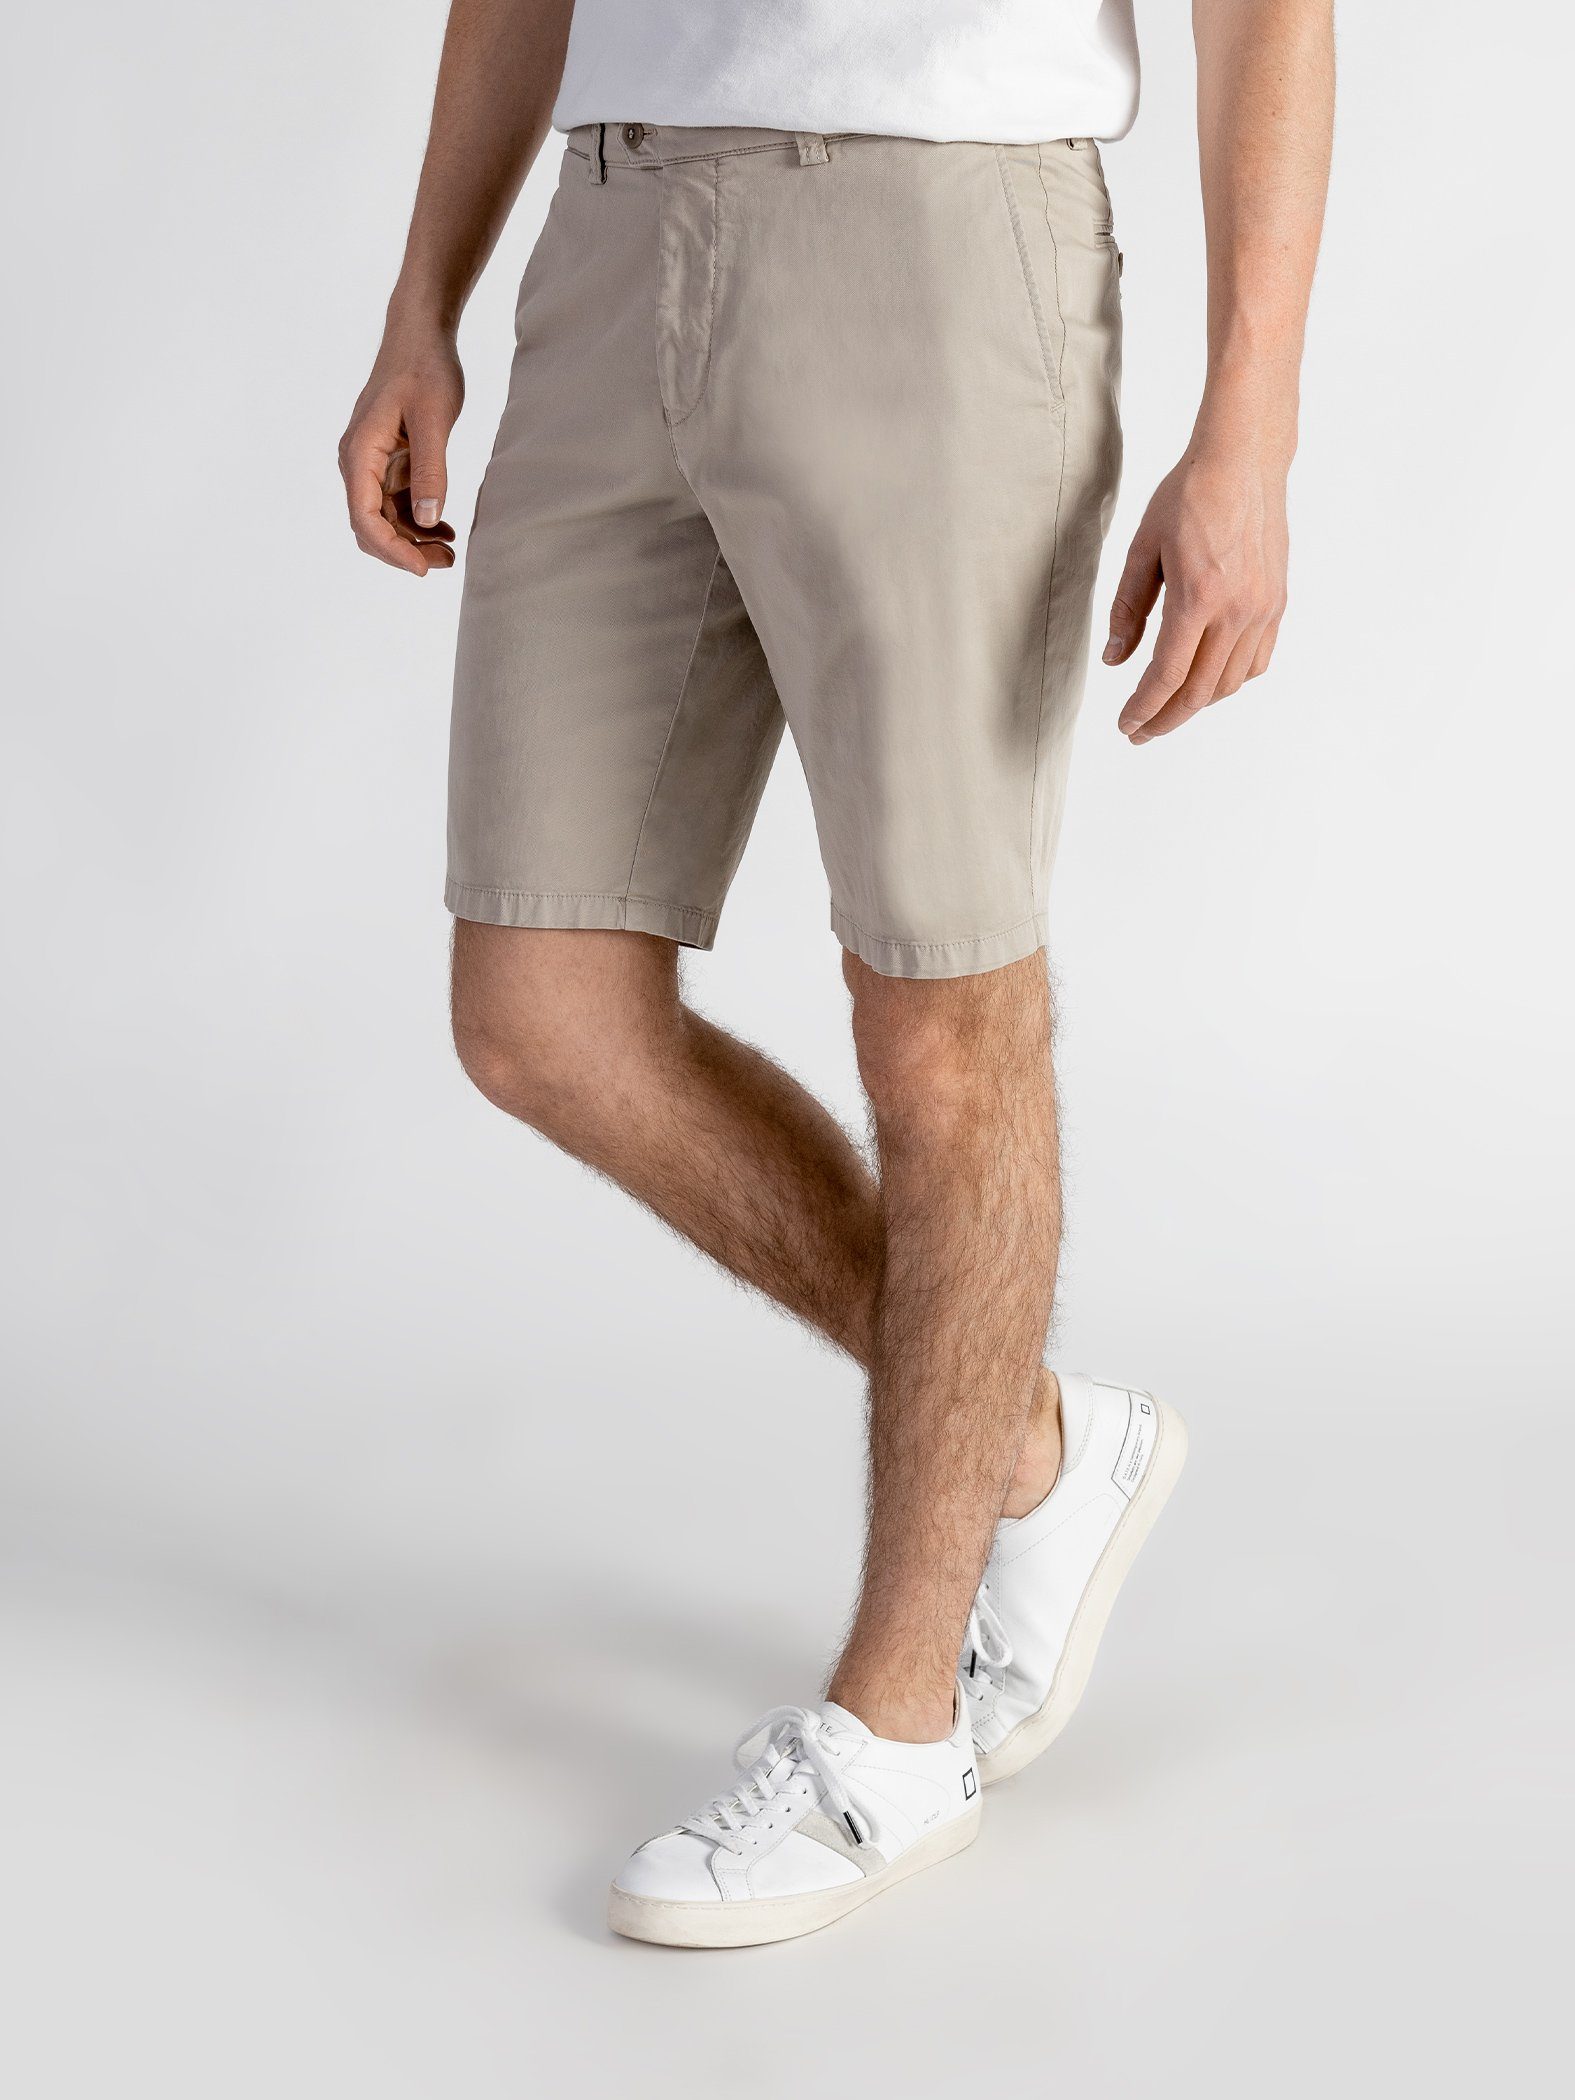 TwoMates Shorts Shorts mit elastischem Bund, Farbauswahl, GOTS-zertifiziert sandbeige